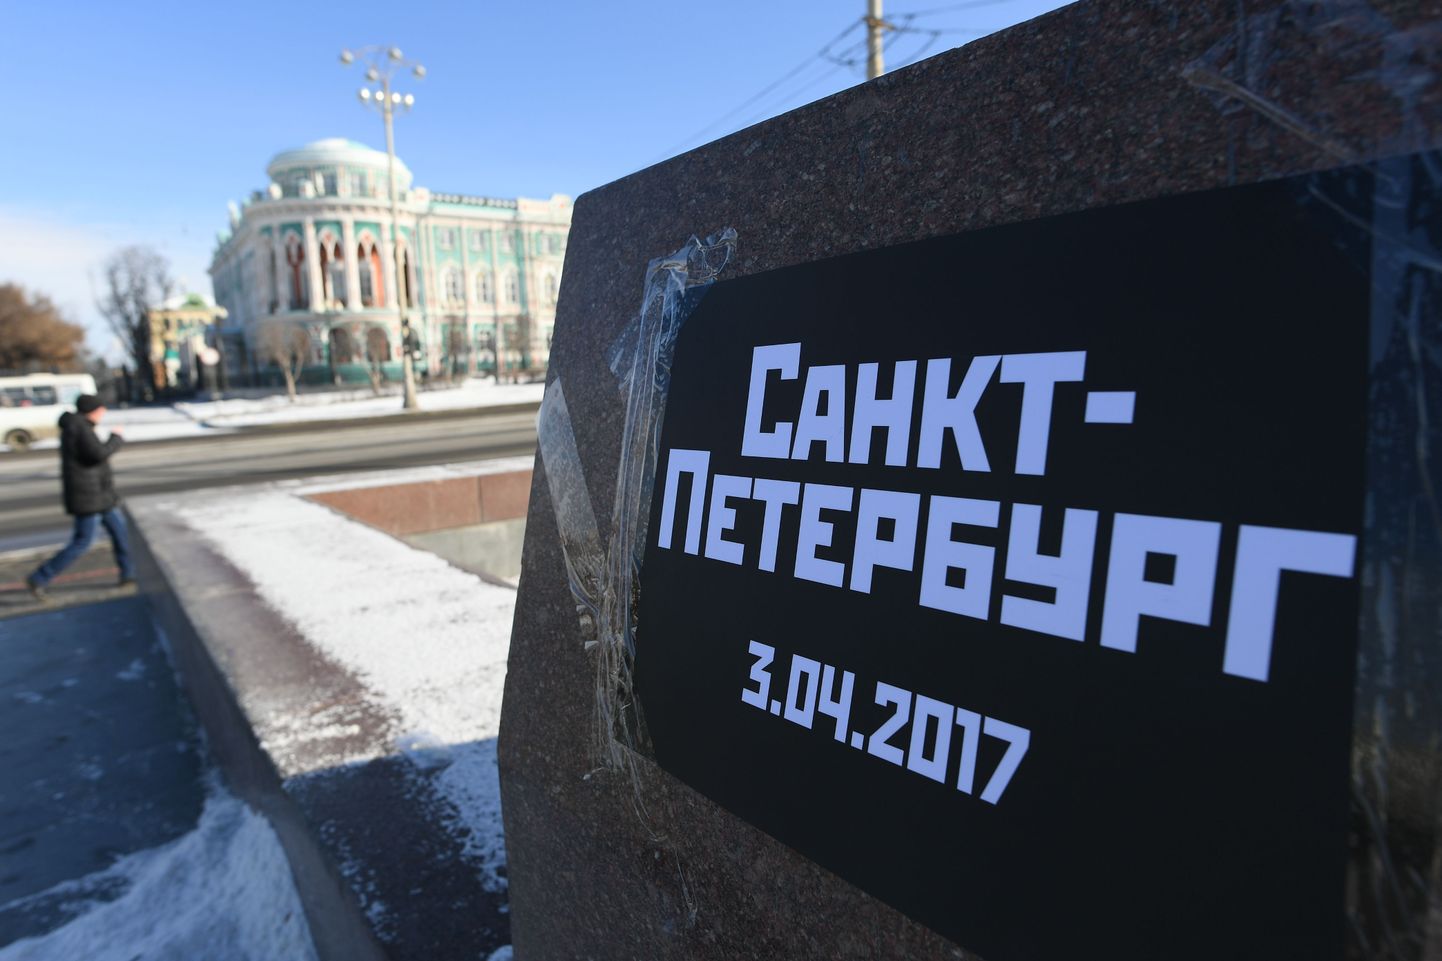 Взрыв неустановленного устройства произошел 3 апреля около 14:40 мск в вагоне поезда на перегоне между станциями петербургского метро «Технологический институт» и «Сенная площадь».